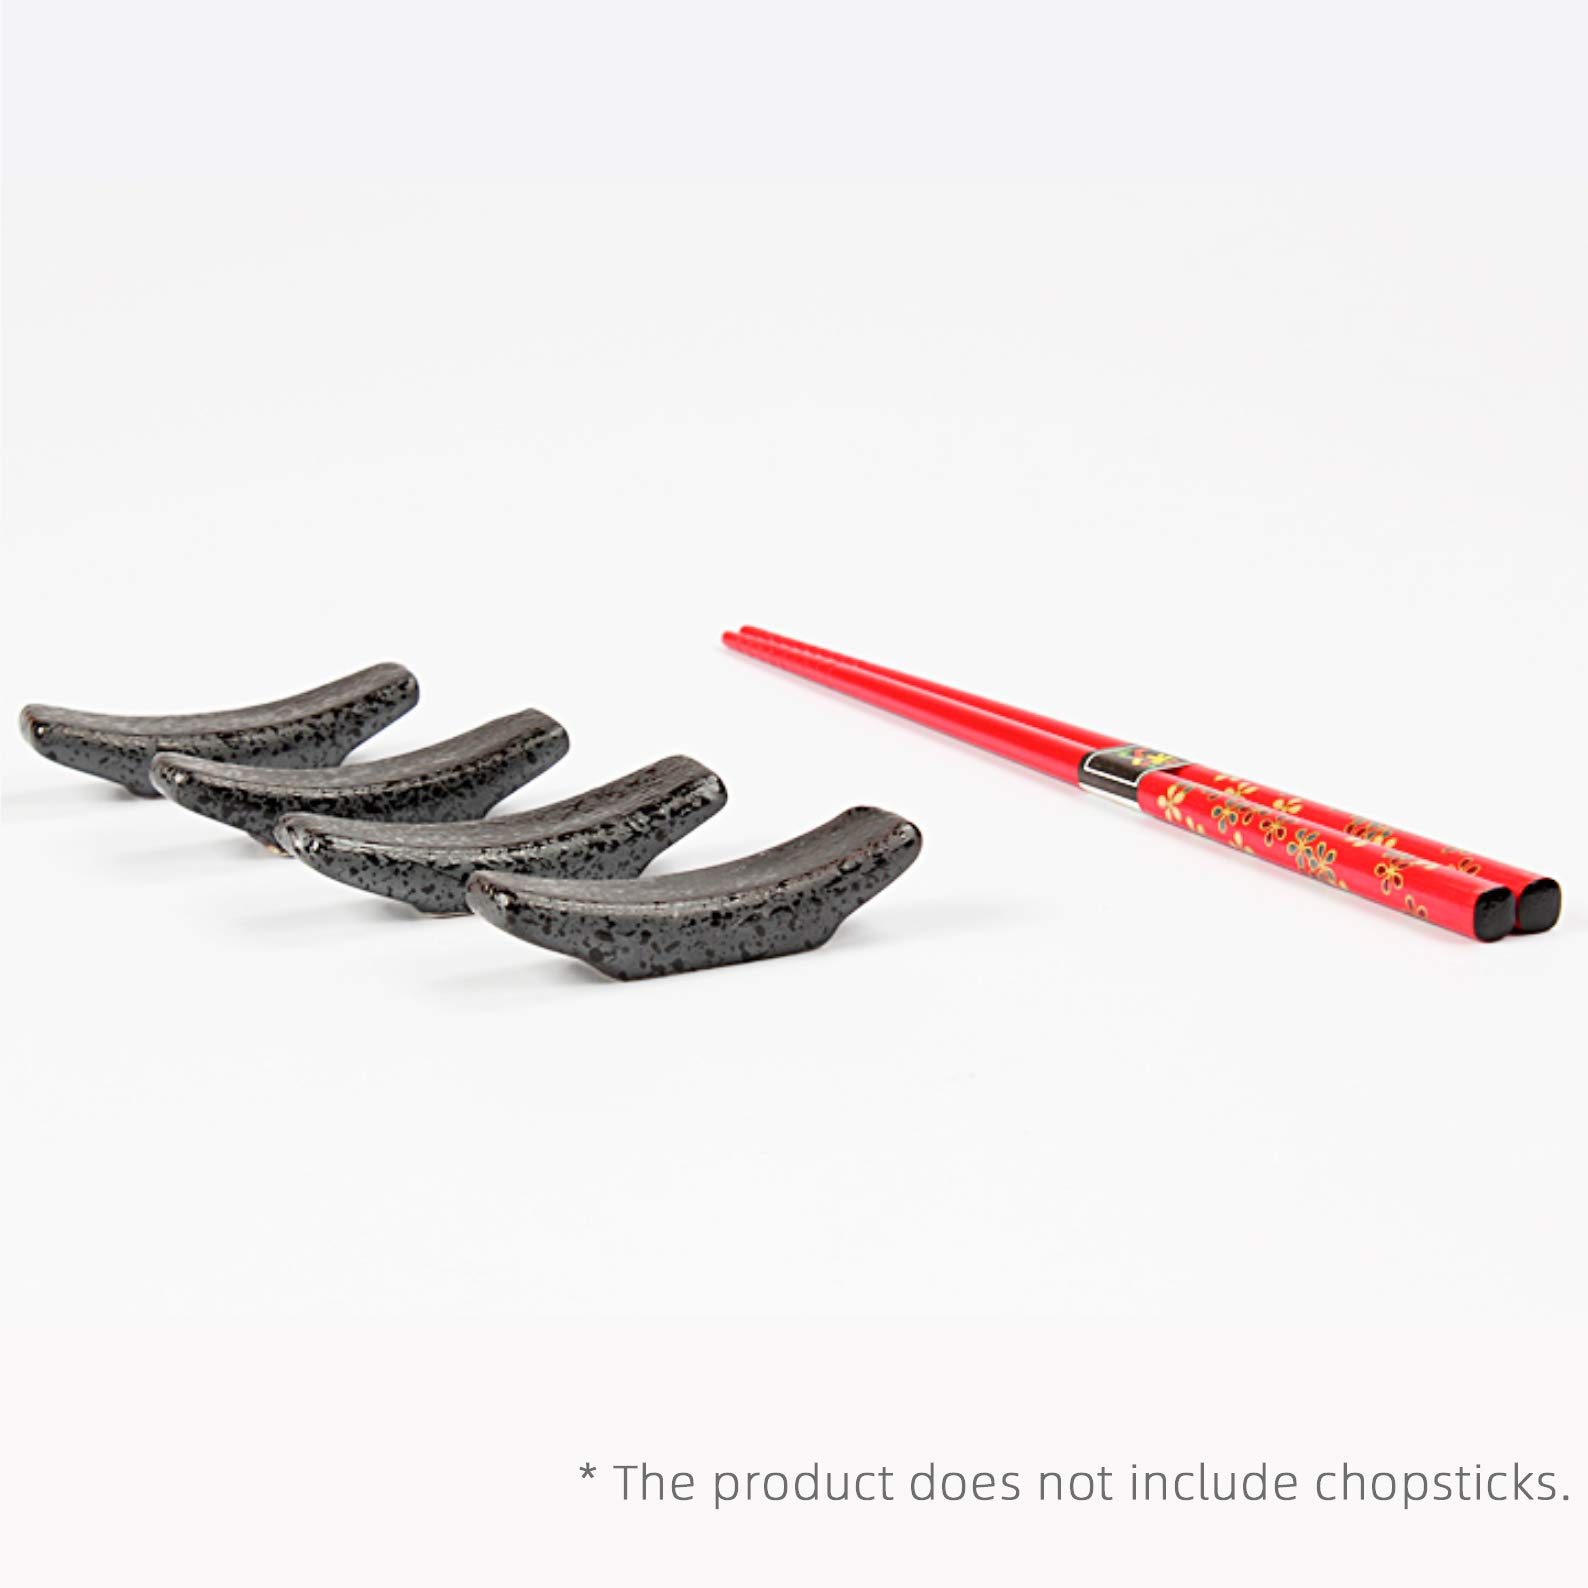 Chopsticks Holder Set of 4 Ceramic Chopstick Stand Rest Rack Spoon Fork Knife Holder Set(Black)